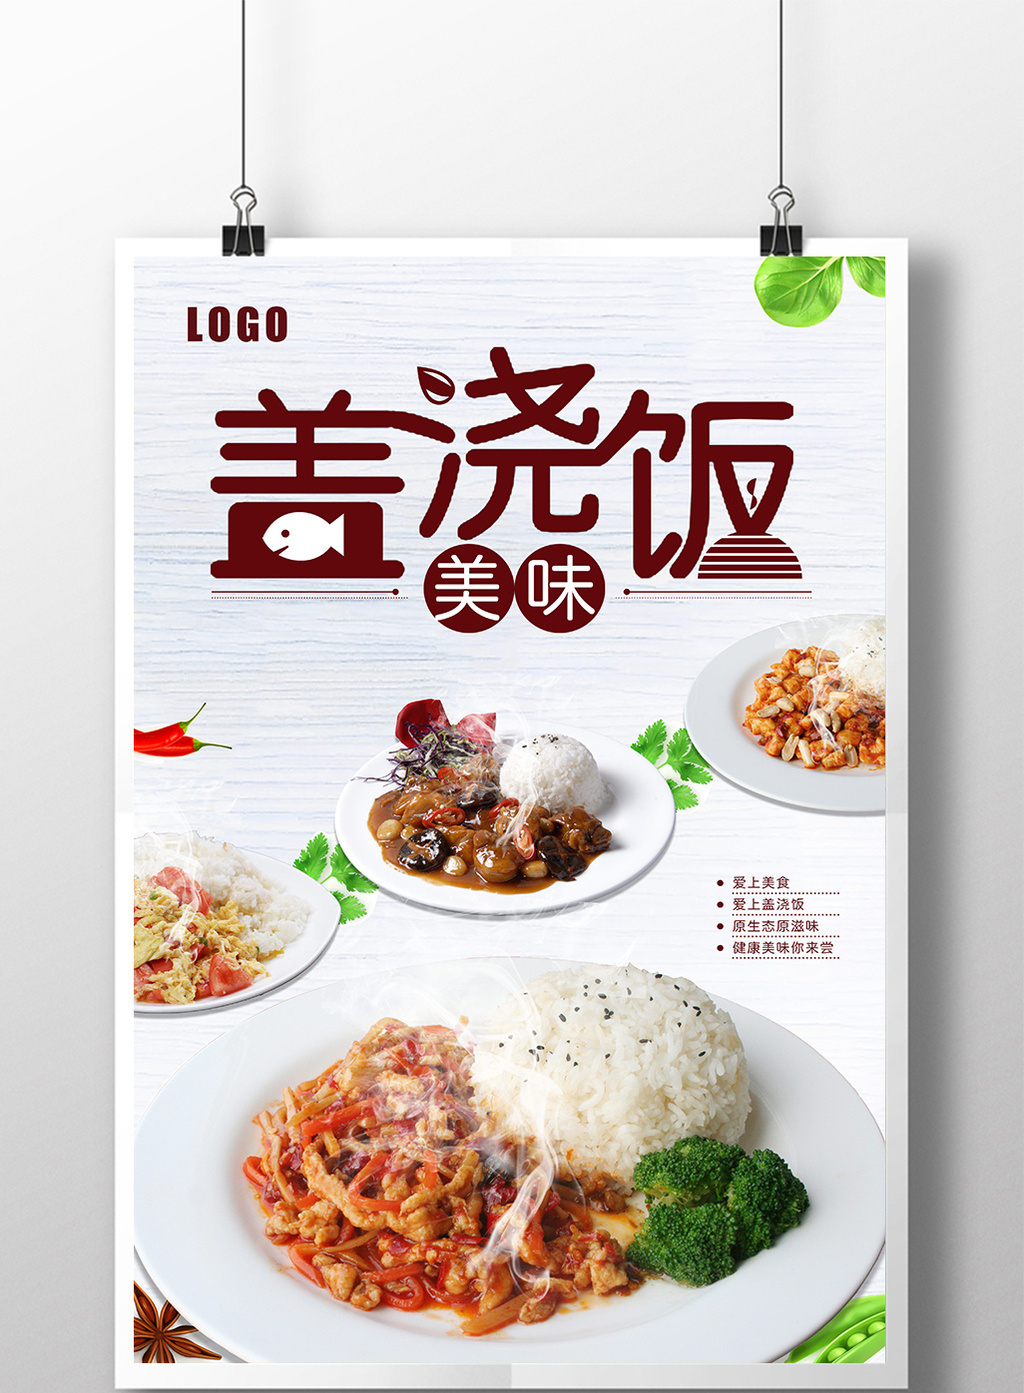 包图网提供精美好看的美食美味盖浇饭广告海报素材免费下载,本次作品